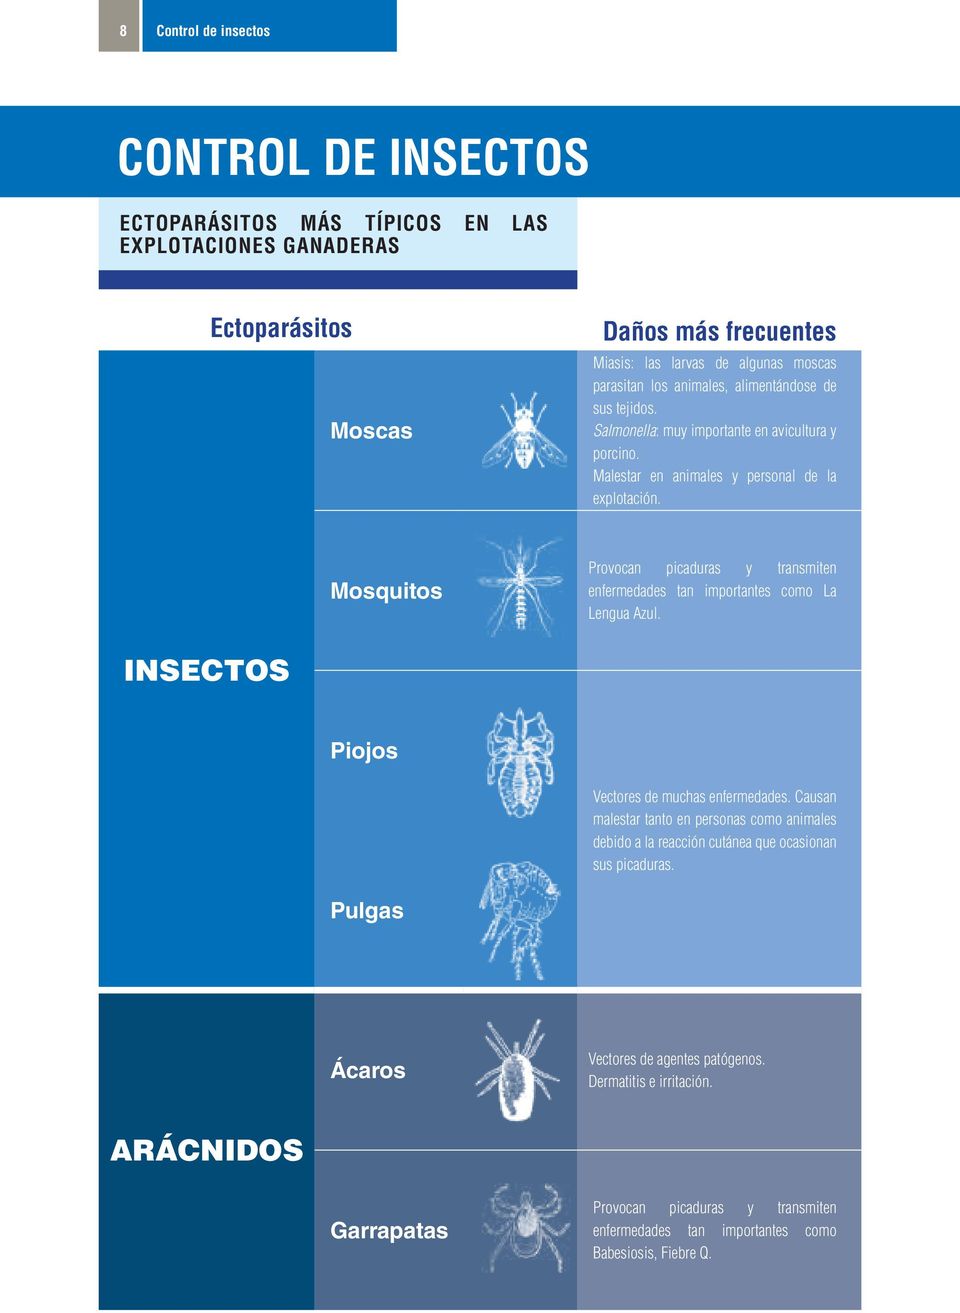 Mosquitos Provocan picaduras y transmiten enfermedades tan importantes como La Lengua Azul. INSECTOS Piojos Vectores de muchas enfermedades.